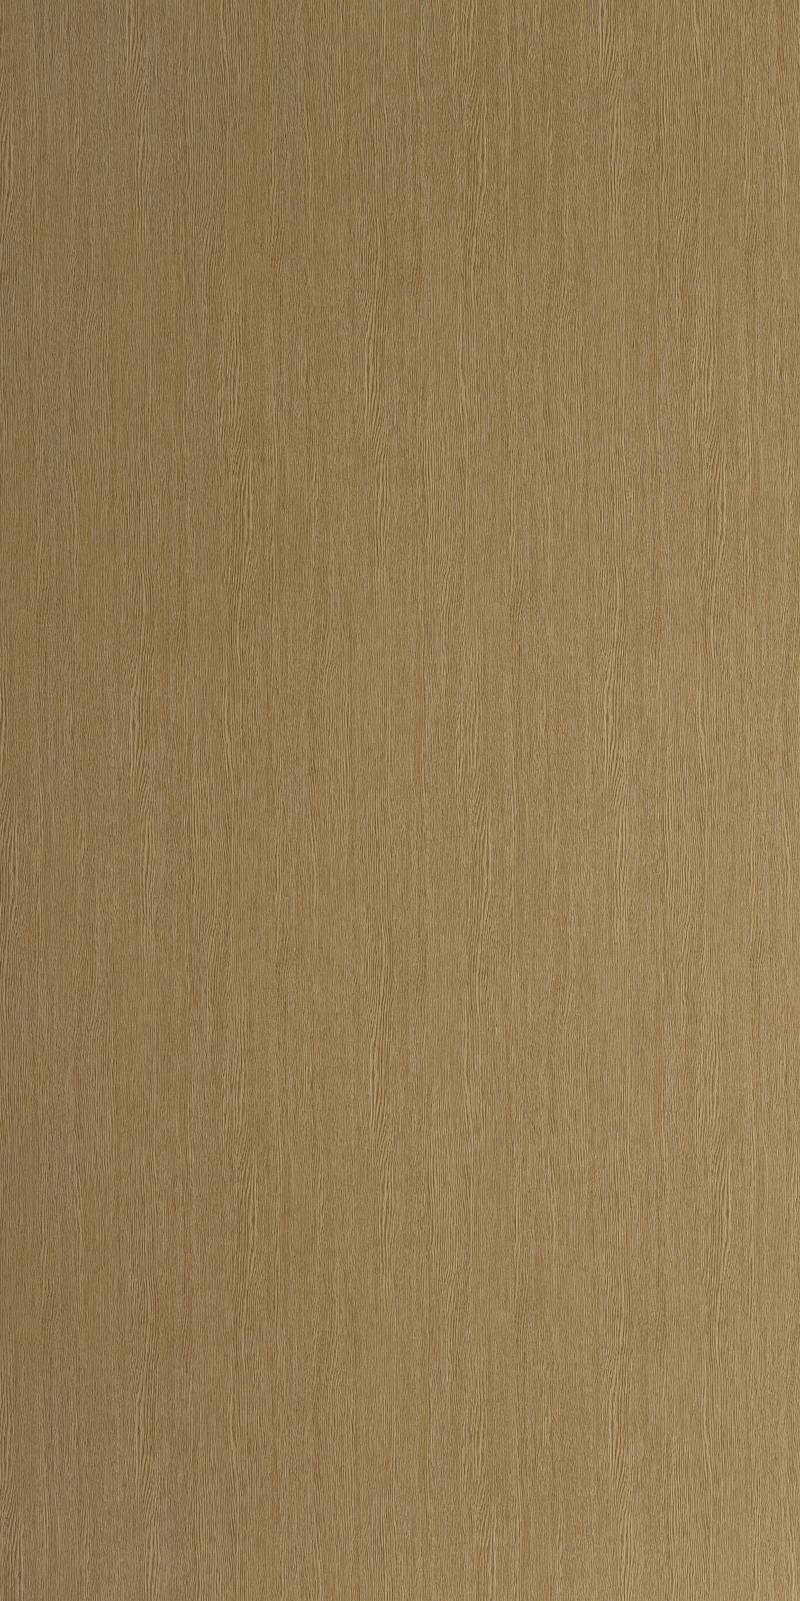 9348 - Light Oak (4' x 8')